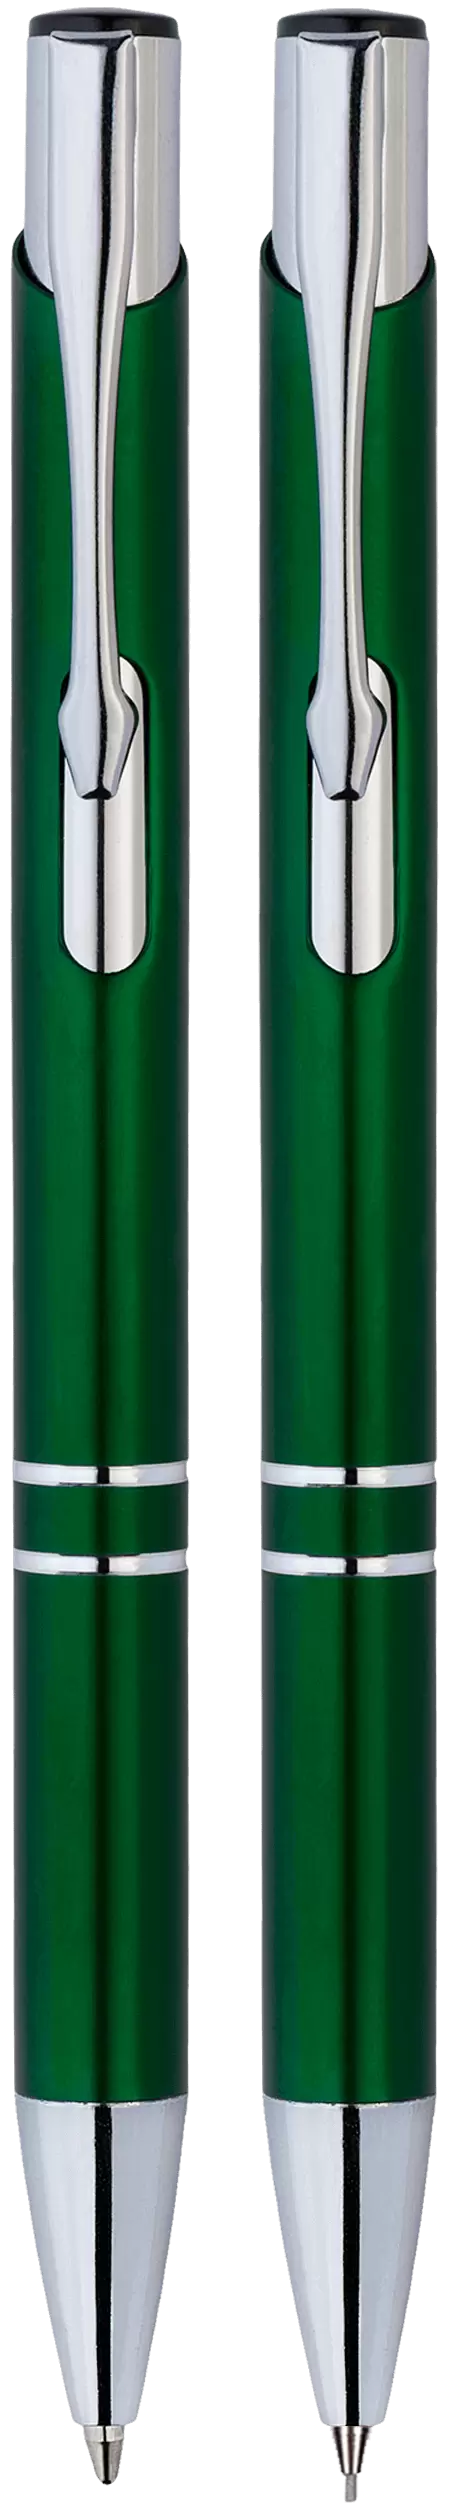 Ручка Набор KOSKO, ручка и карандаш Зеленый 1004-02